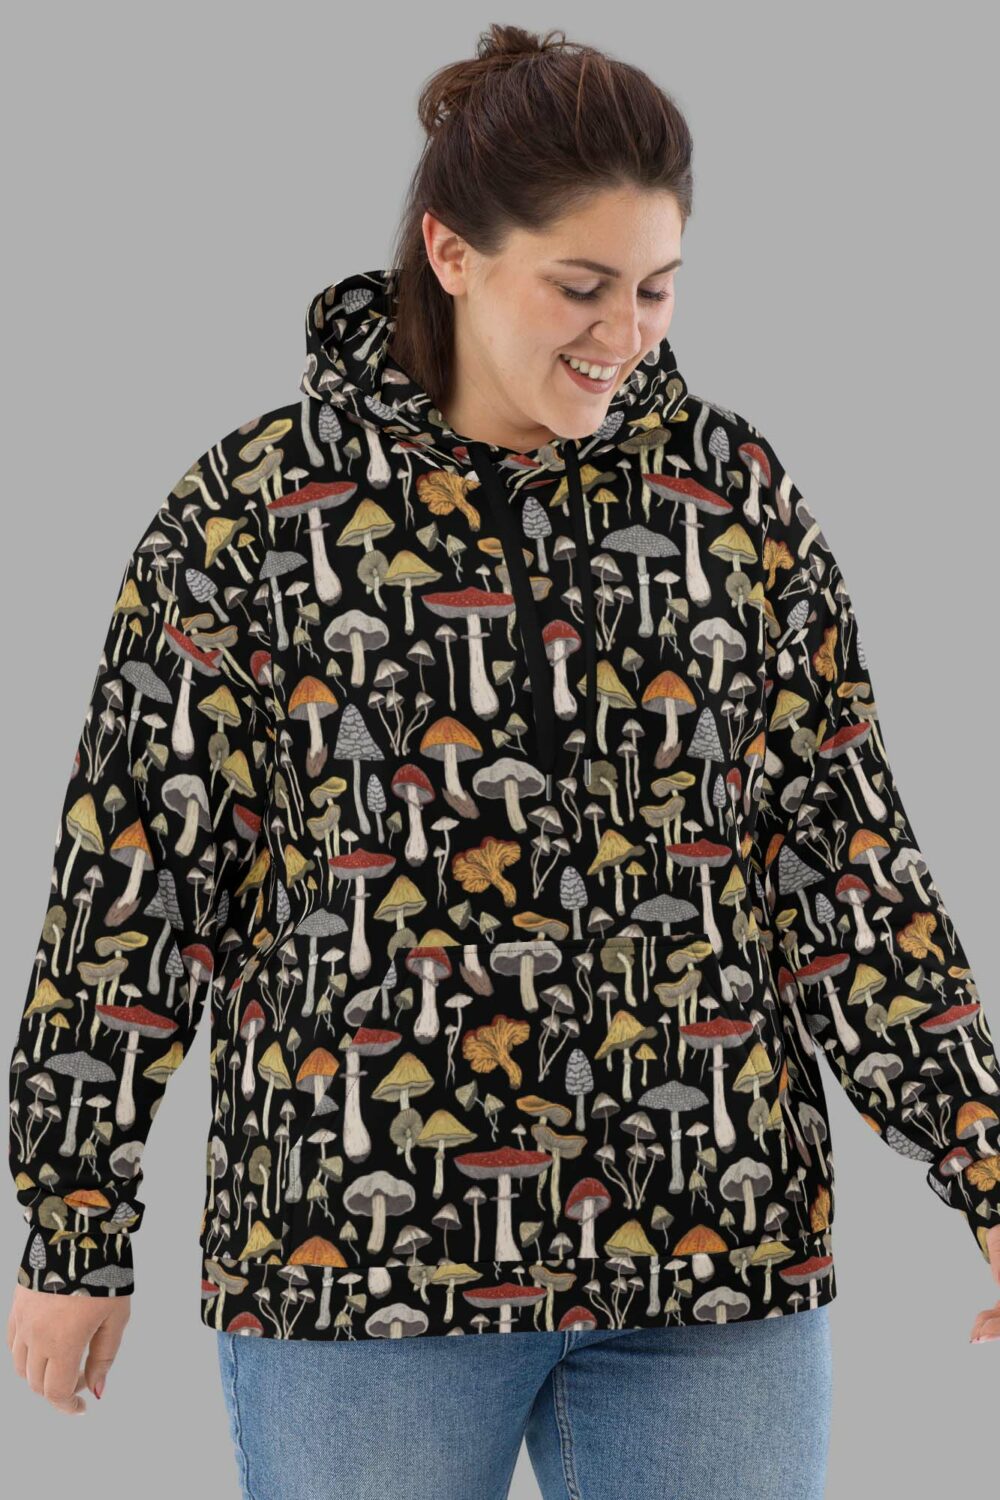 cosmic drifters hoodie front mushroom print